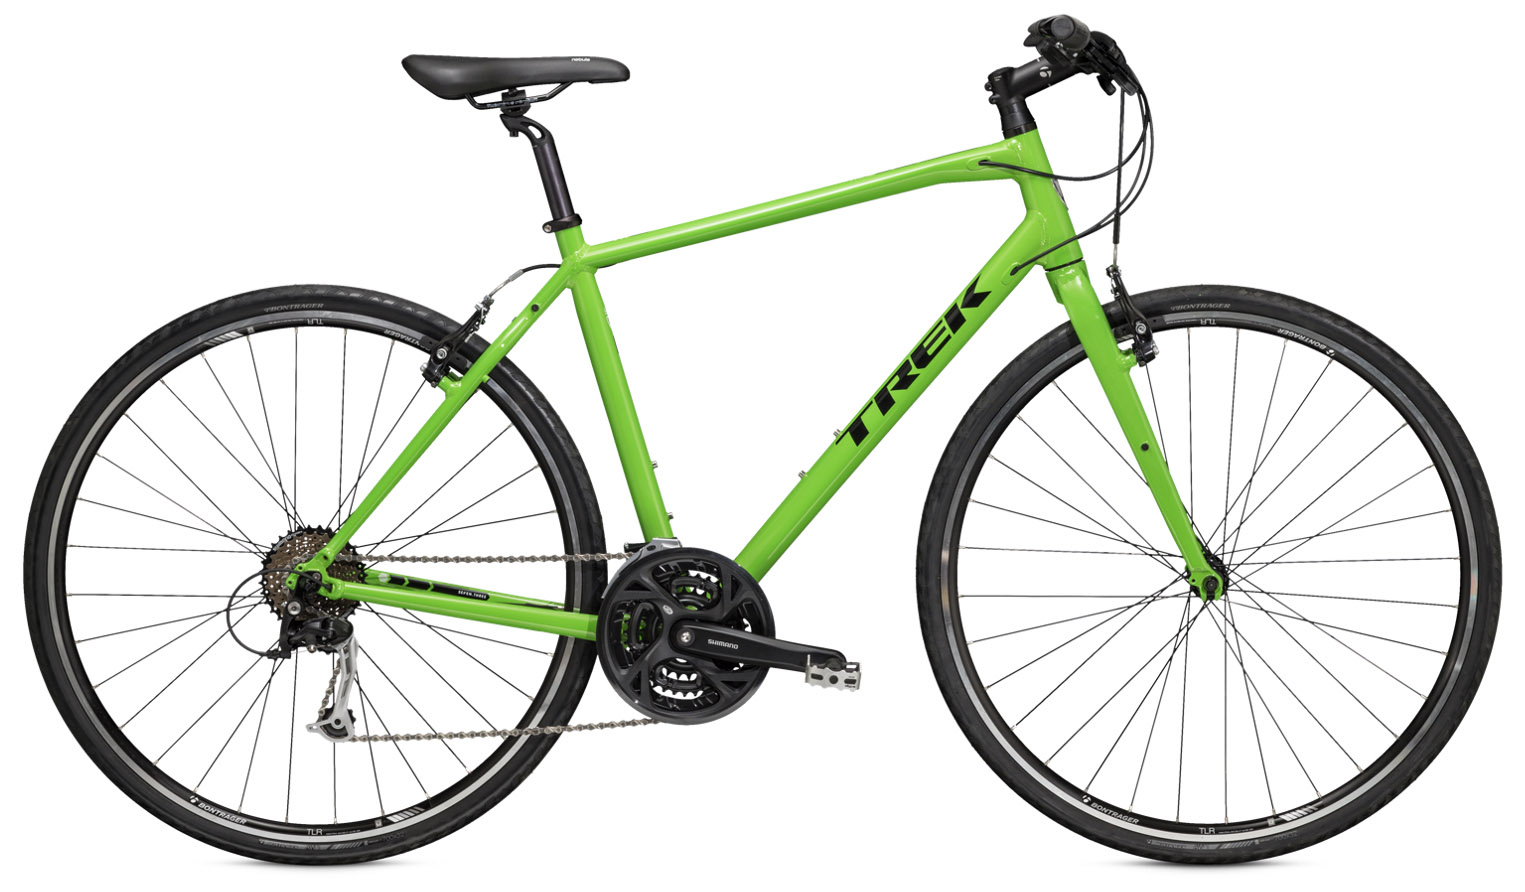  Велосипед Trek 7.4 FX 2015